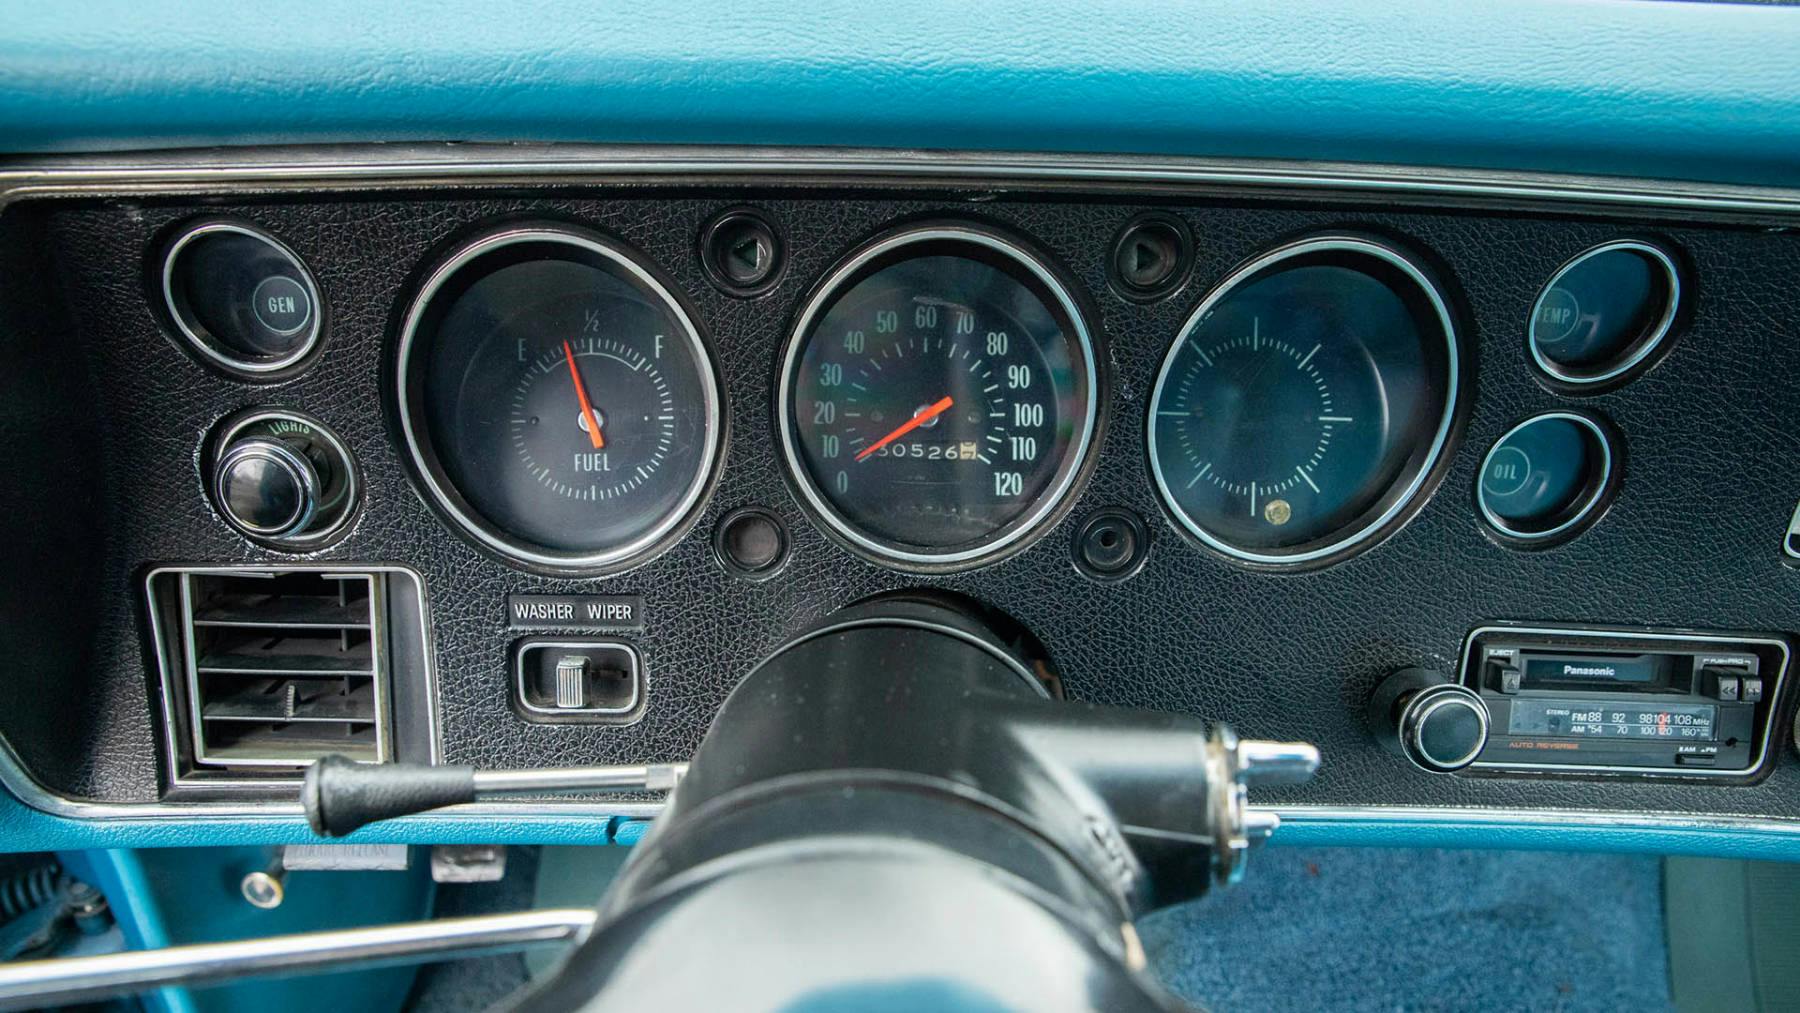 1970 Chevrolet El Camino SS 396 interior dash cluster gauges